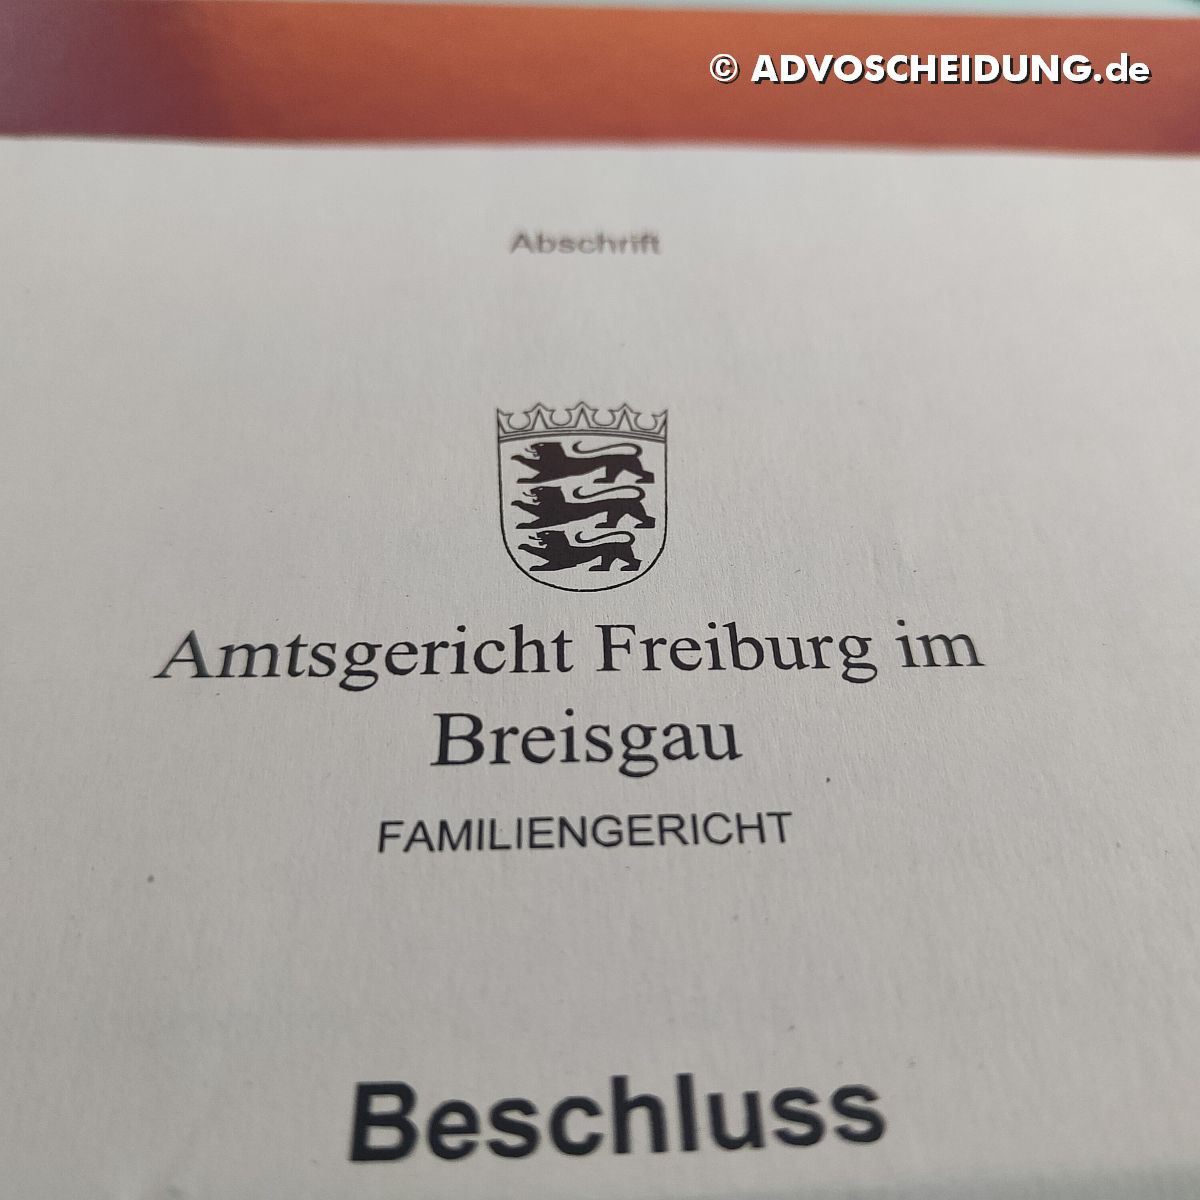 Scheidung online einreichen über das beA durch Anwalt in Freiburg